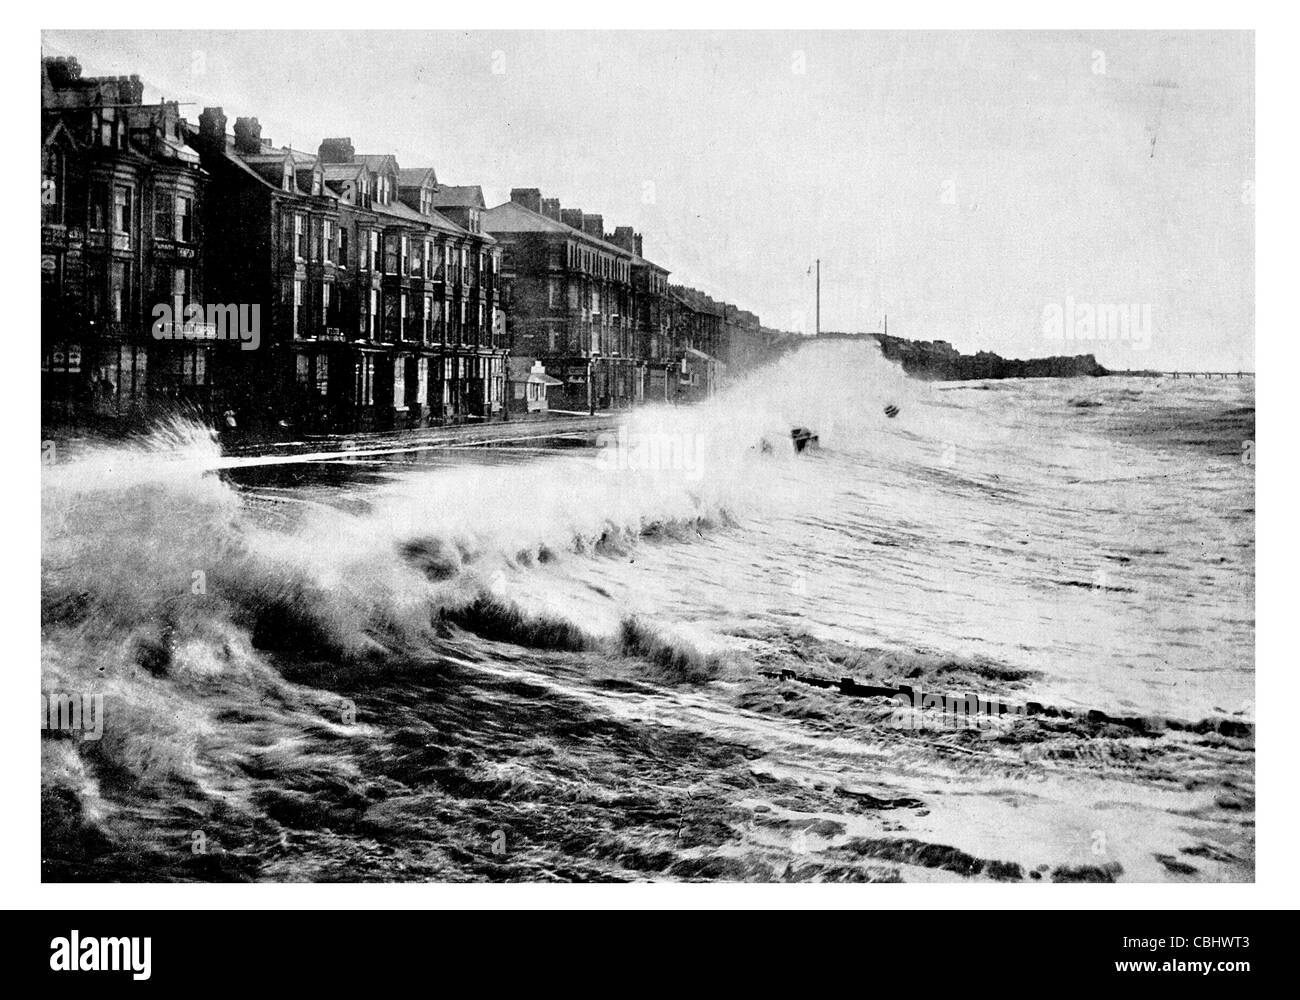 Blackpool Lancashire England pier seaside resort le fracas des vagues de tempête de pluie pluie de l'onde de marée marée des dégâts d'eau rude journée Banque D'Images